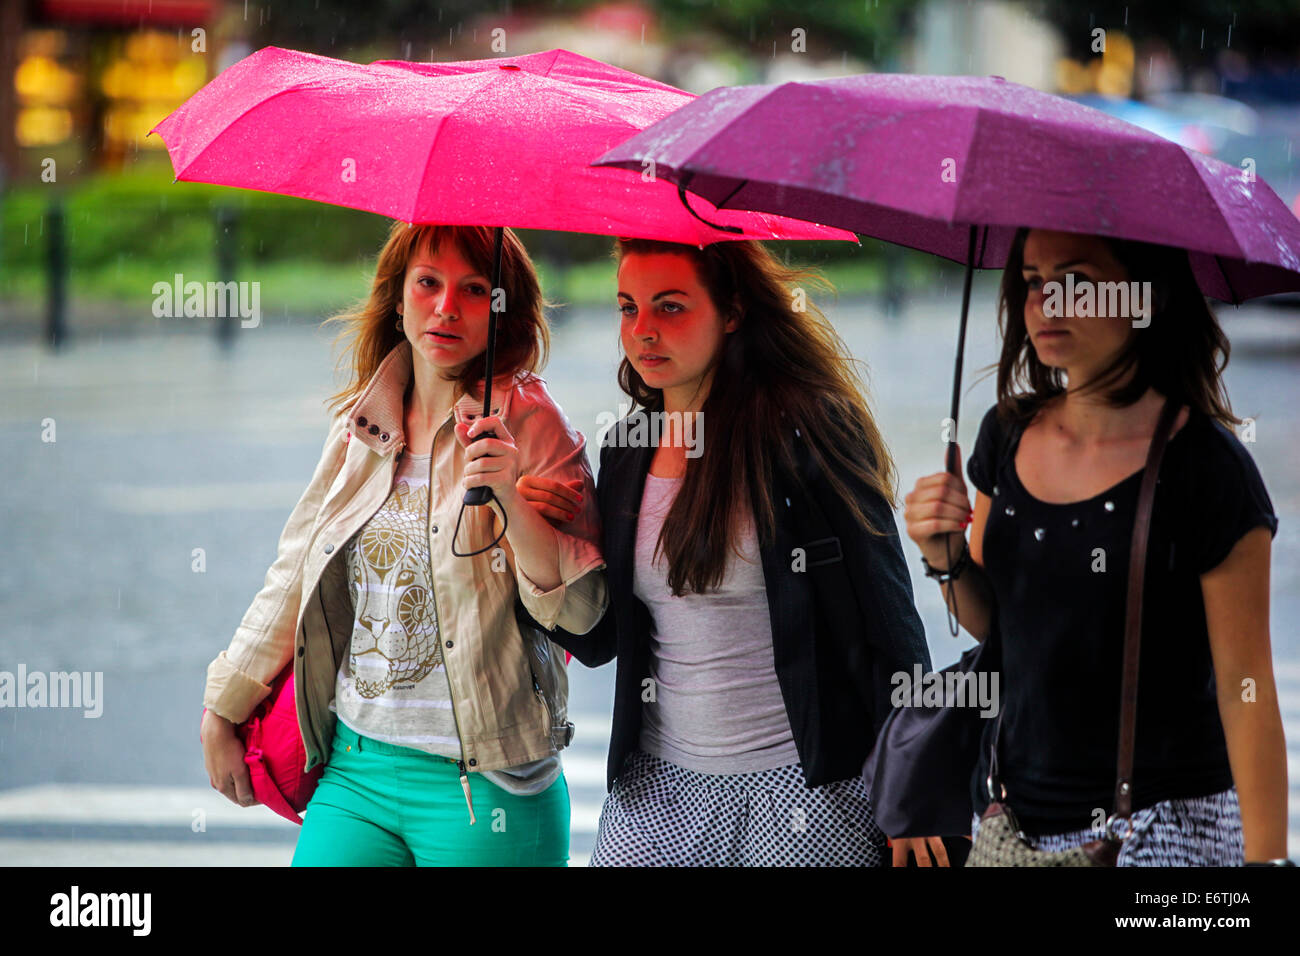 Drei Mädchen, Regenschirm, Frauen unter Regenschirmen im Sommer Regen, Stadt Straße Sommer Wetter Prag Tschechische Republik Europa Stockfoto